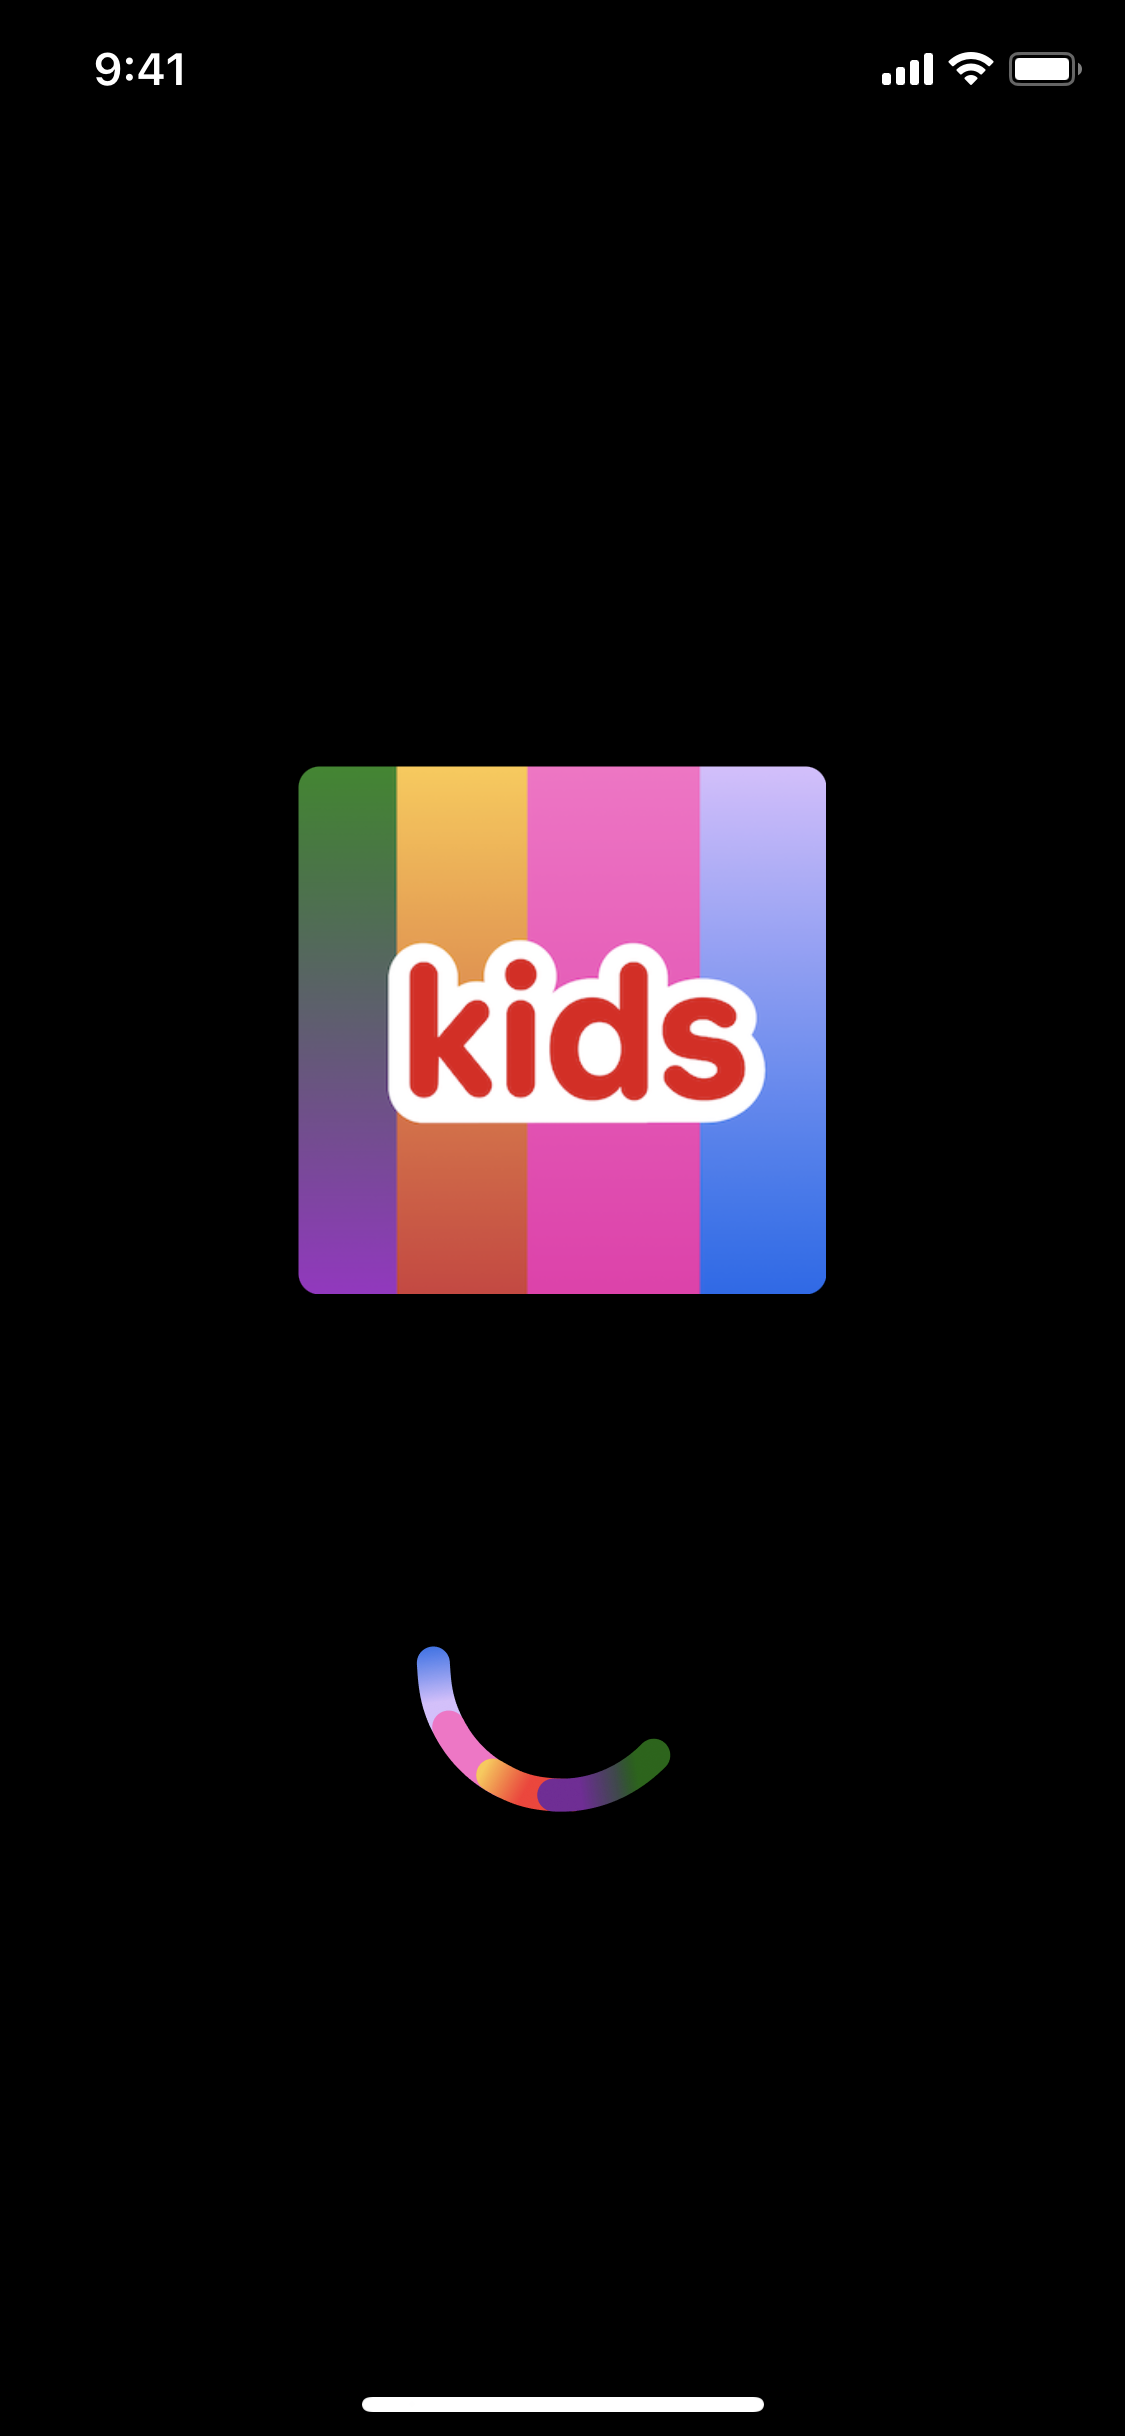 netflix kids logo